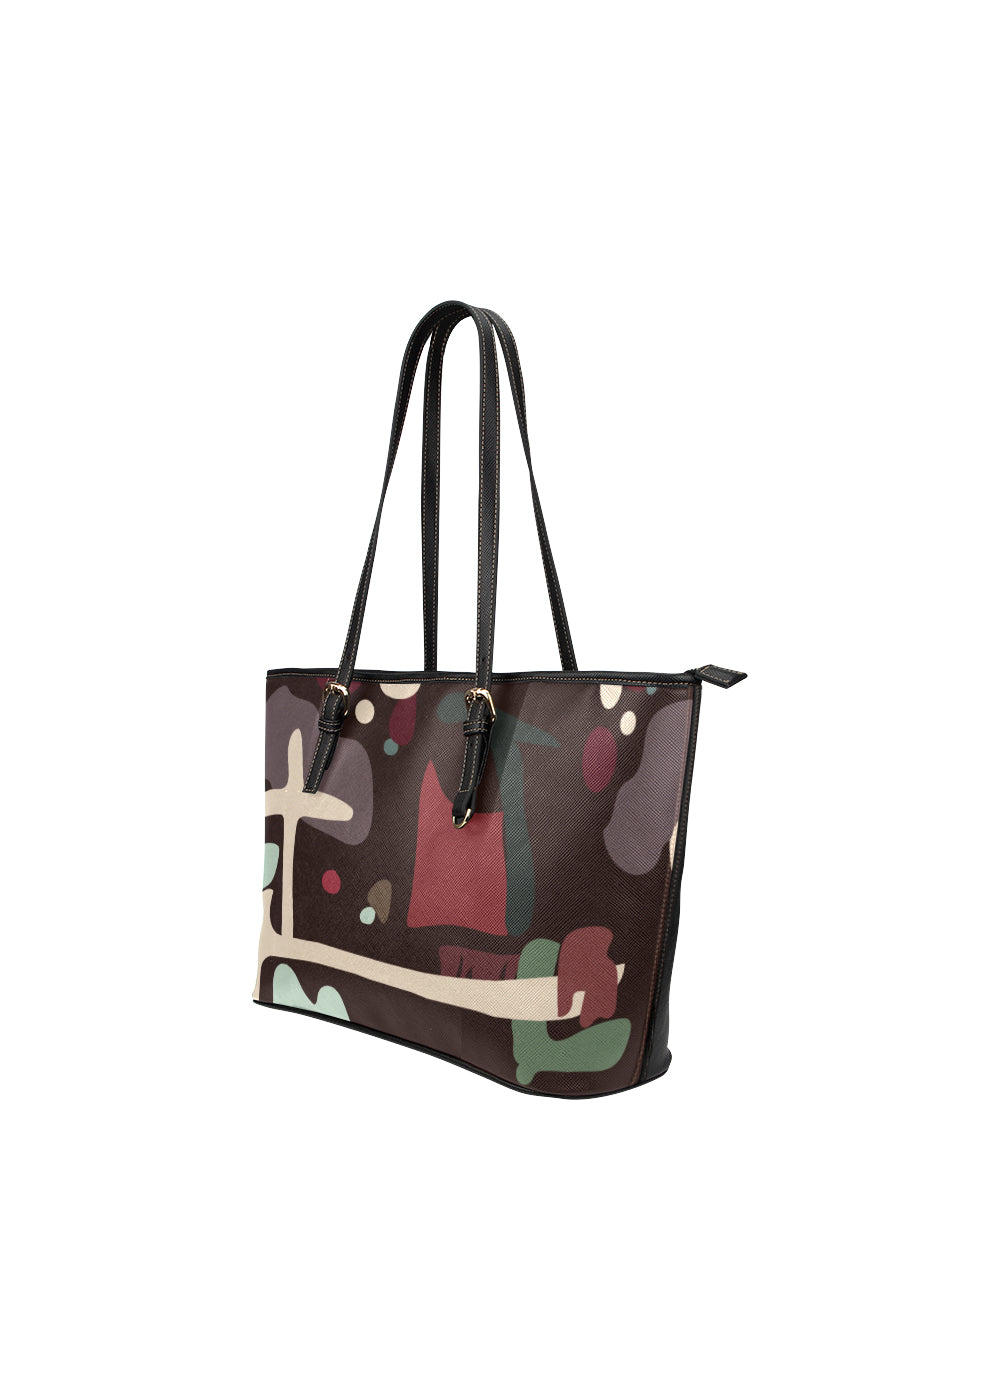 Boonga artsy tote /artistic handbag/ artist bags / brown tote / women tote / sales tote /